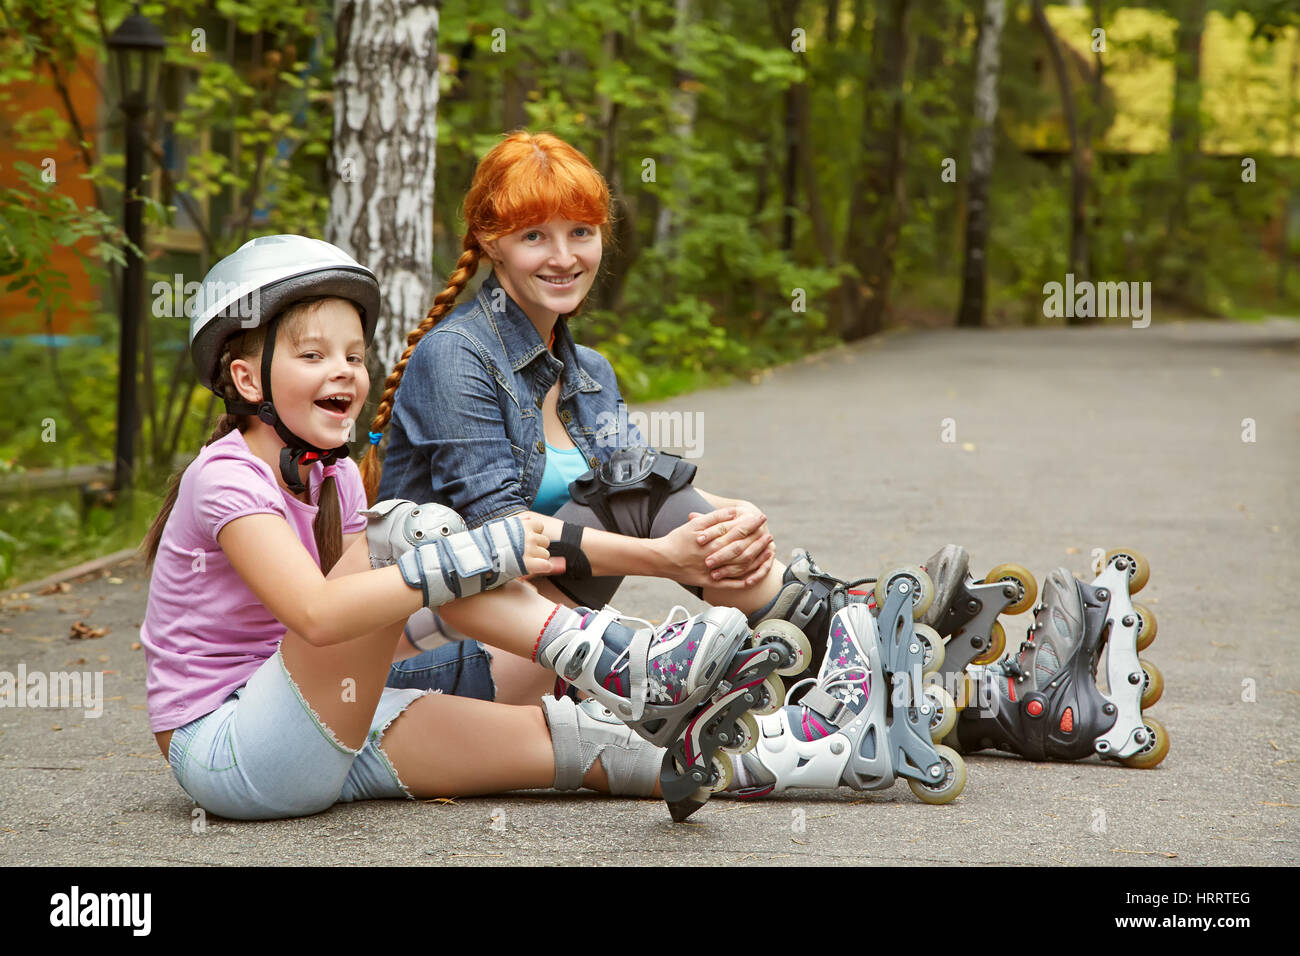 Sport La madre e la figlia in un casco. famiglia sui pattini. Due persone rollerblade. rollerskating outdoor Foto Stock